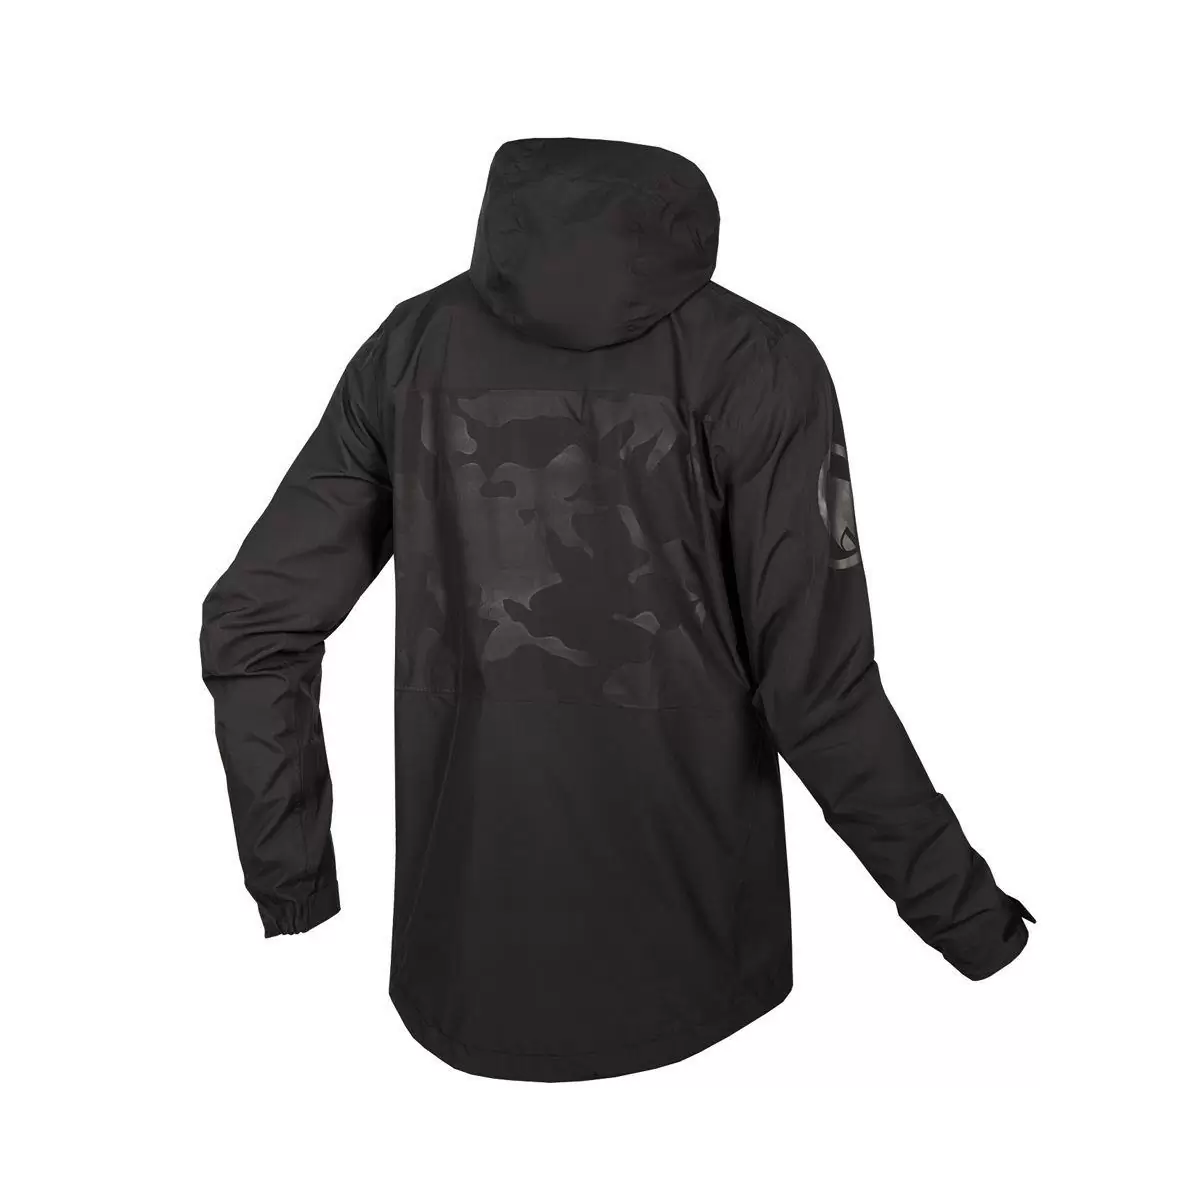 SingleTrack Jacket II Waterproof Black Size XL #1